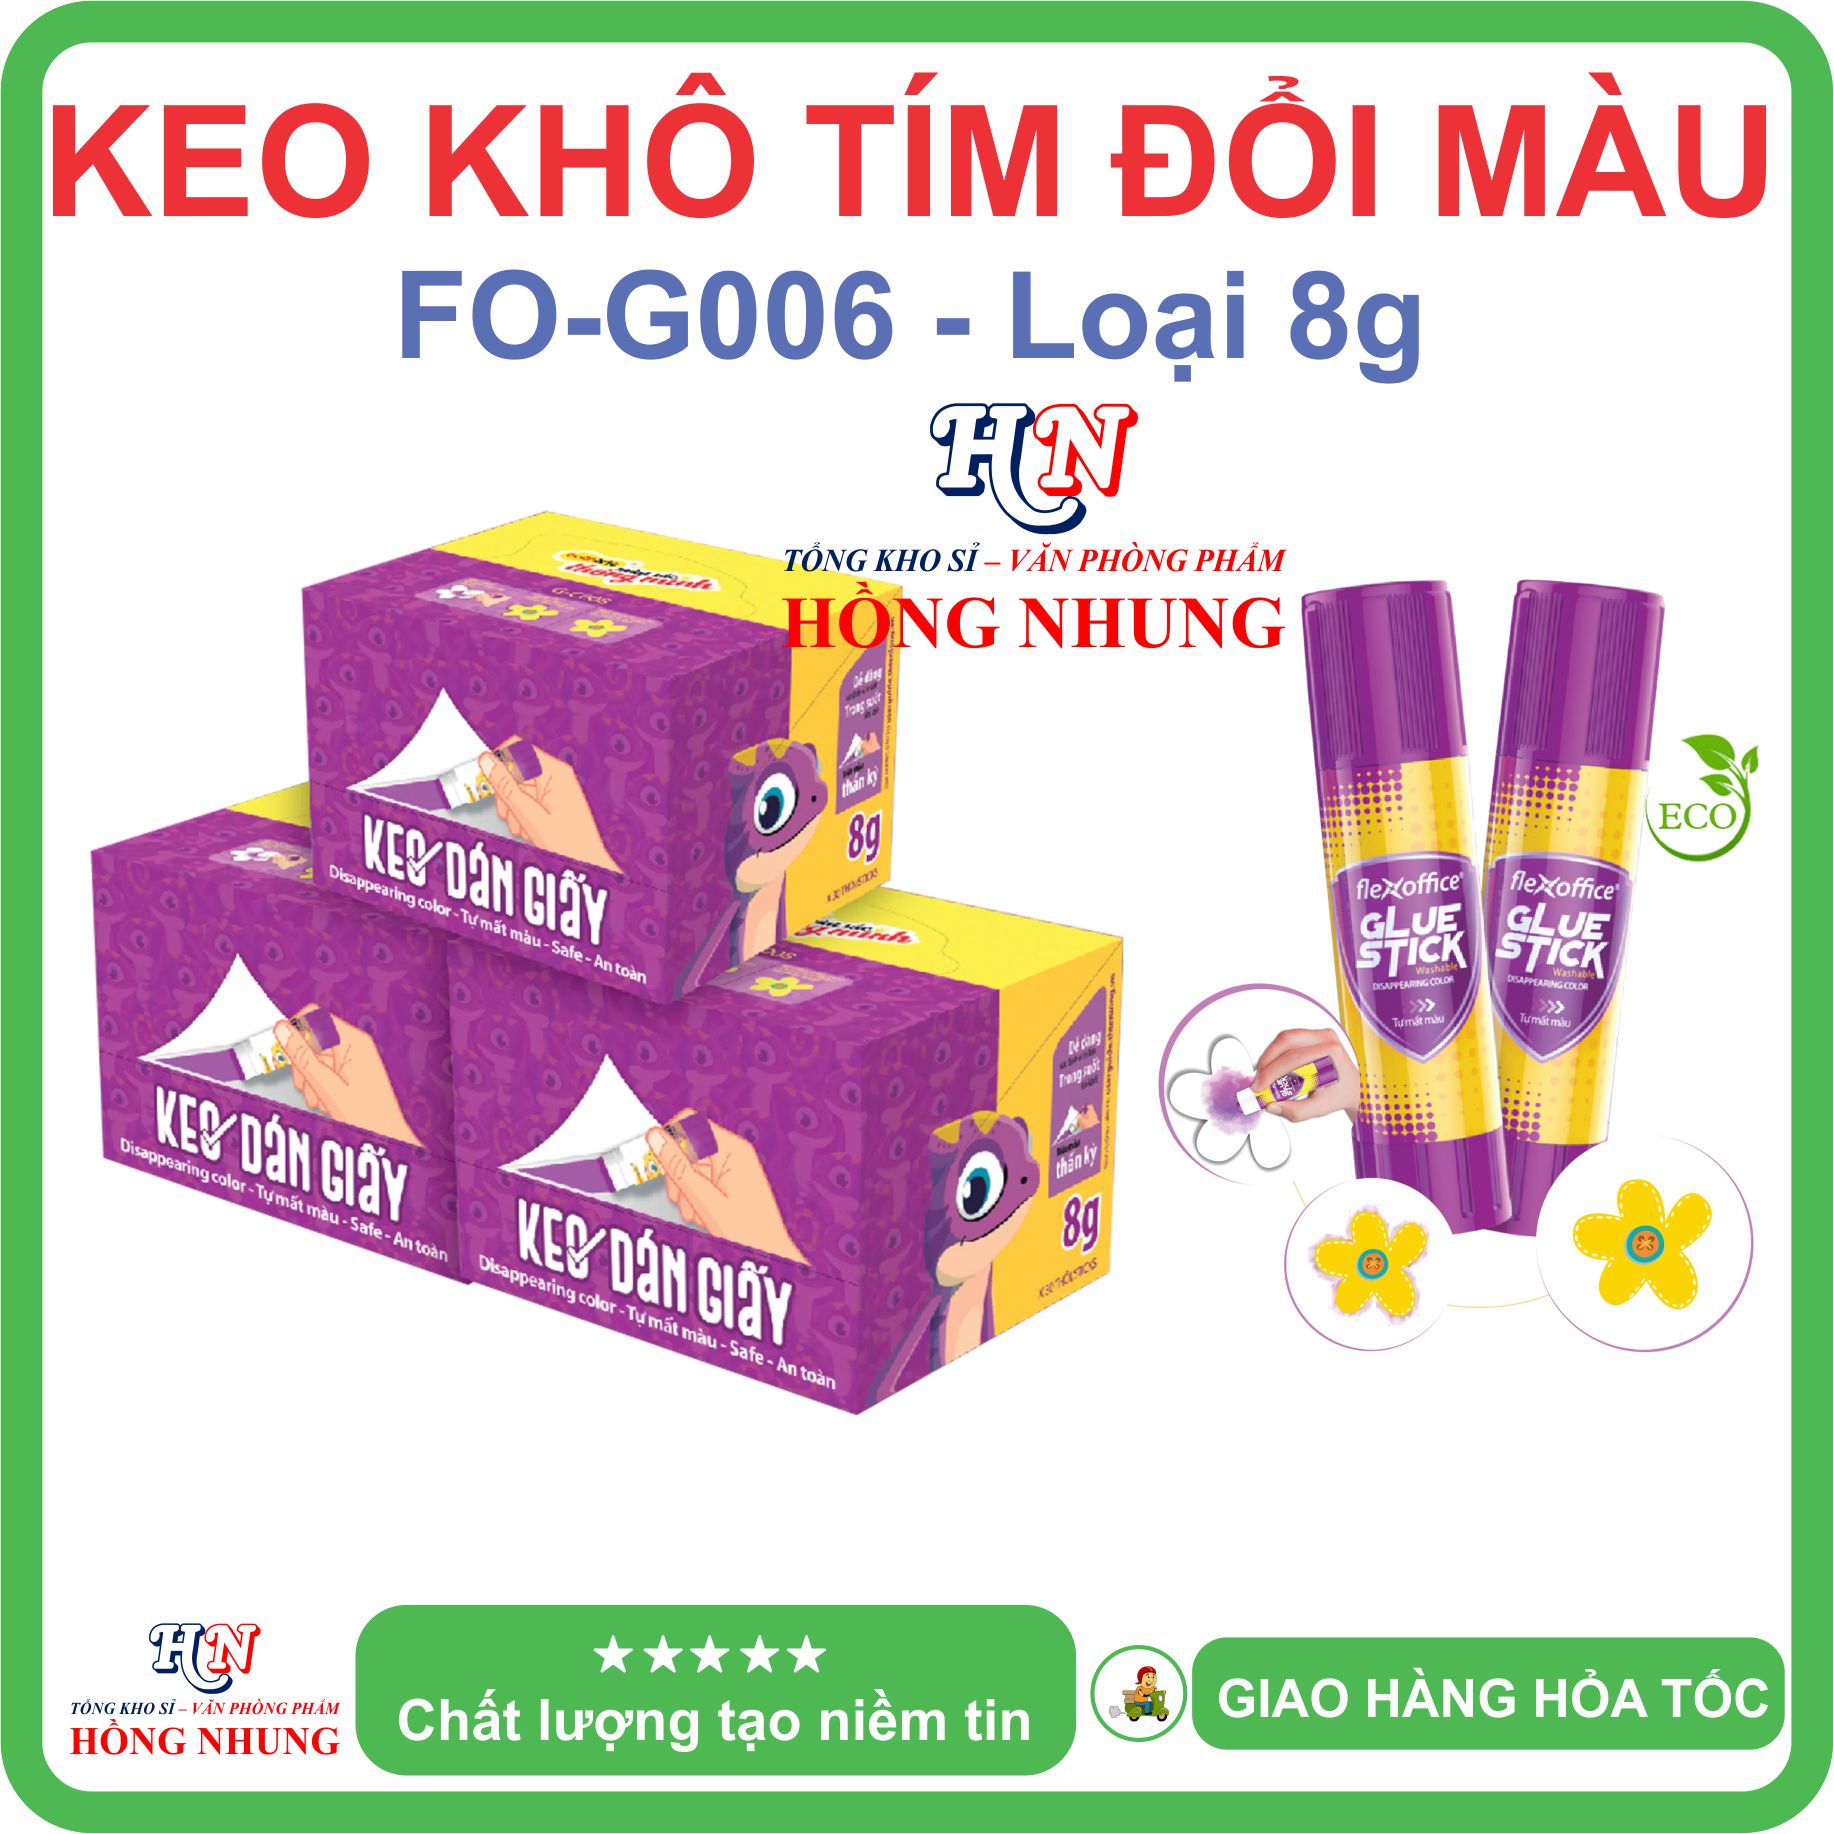 [SALE] Keo Khô dán giấy Doraemon G011 / Tím đổi màu G006, Khô Nhanh, Không Độc Hại, giúp bé ham học